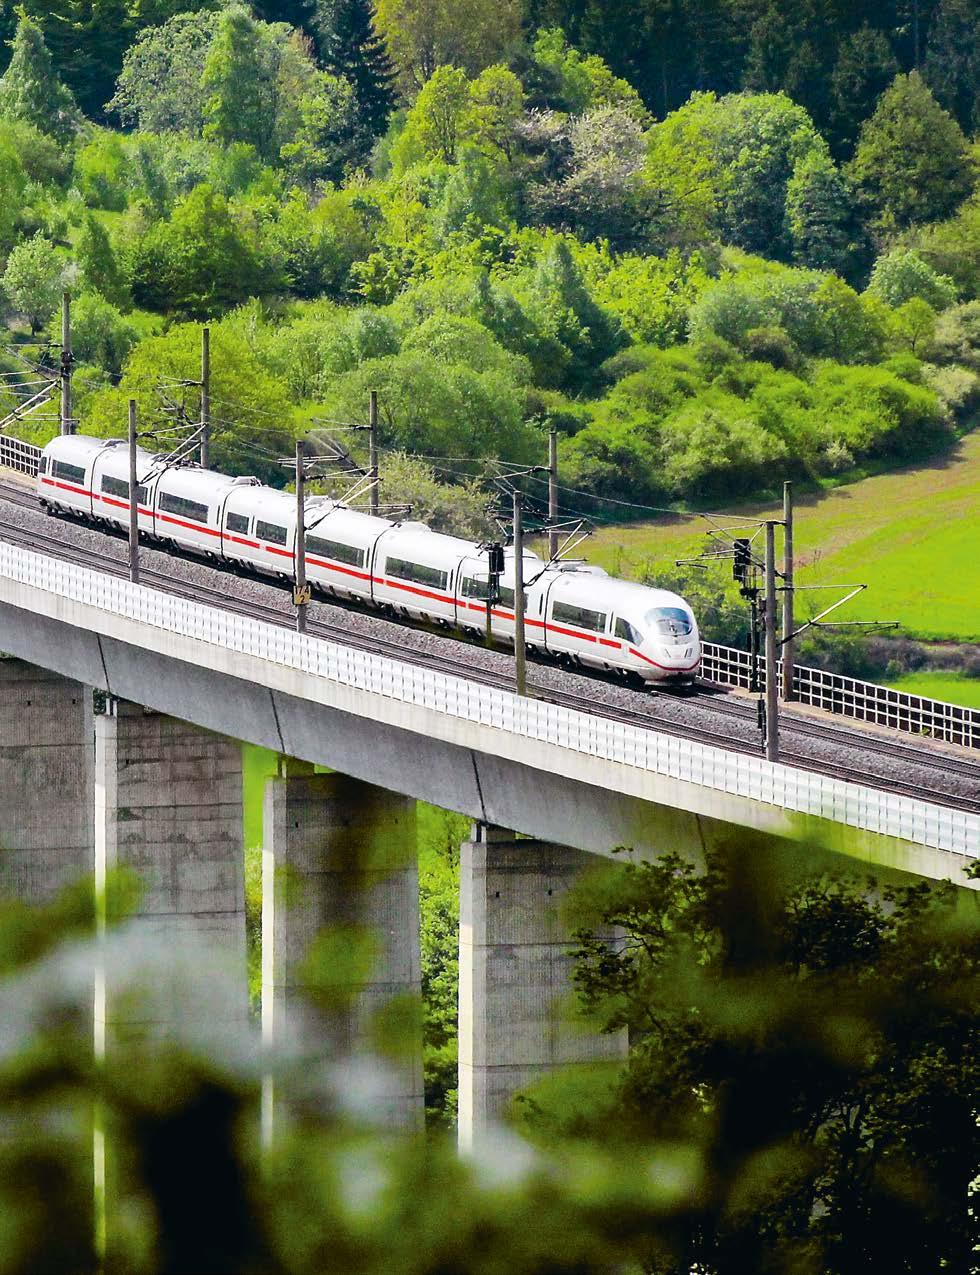 KM LANGES STRECKENNETZ 33.380 5.662 PERSONENBAHNHÖFE 421 KONZERNINTERNE UND -EXTERNE INFRASTRUKTURKUNDEN DB Netze Fahrweg ist die Nummer eins der europäischen Eisenbahninfrastrukturanbieter.